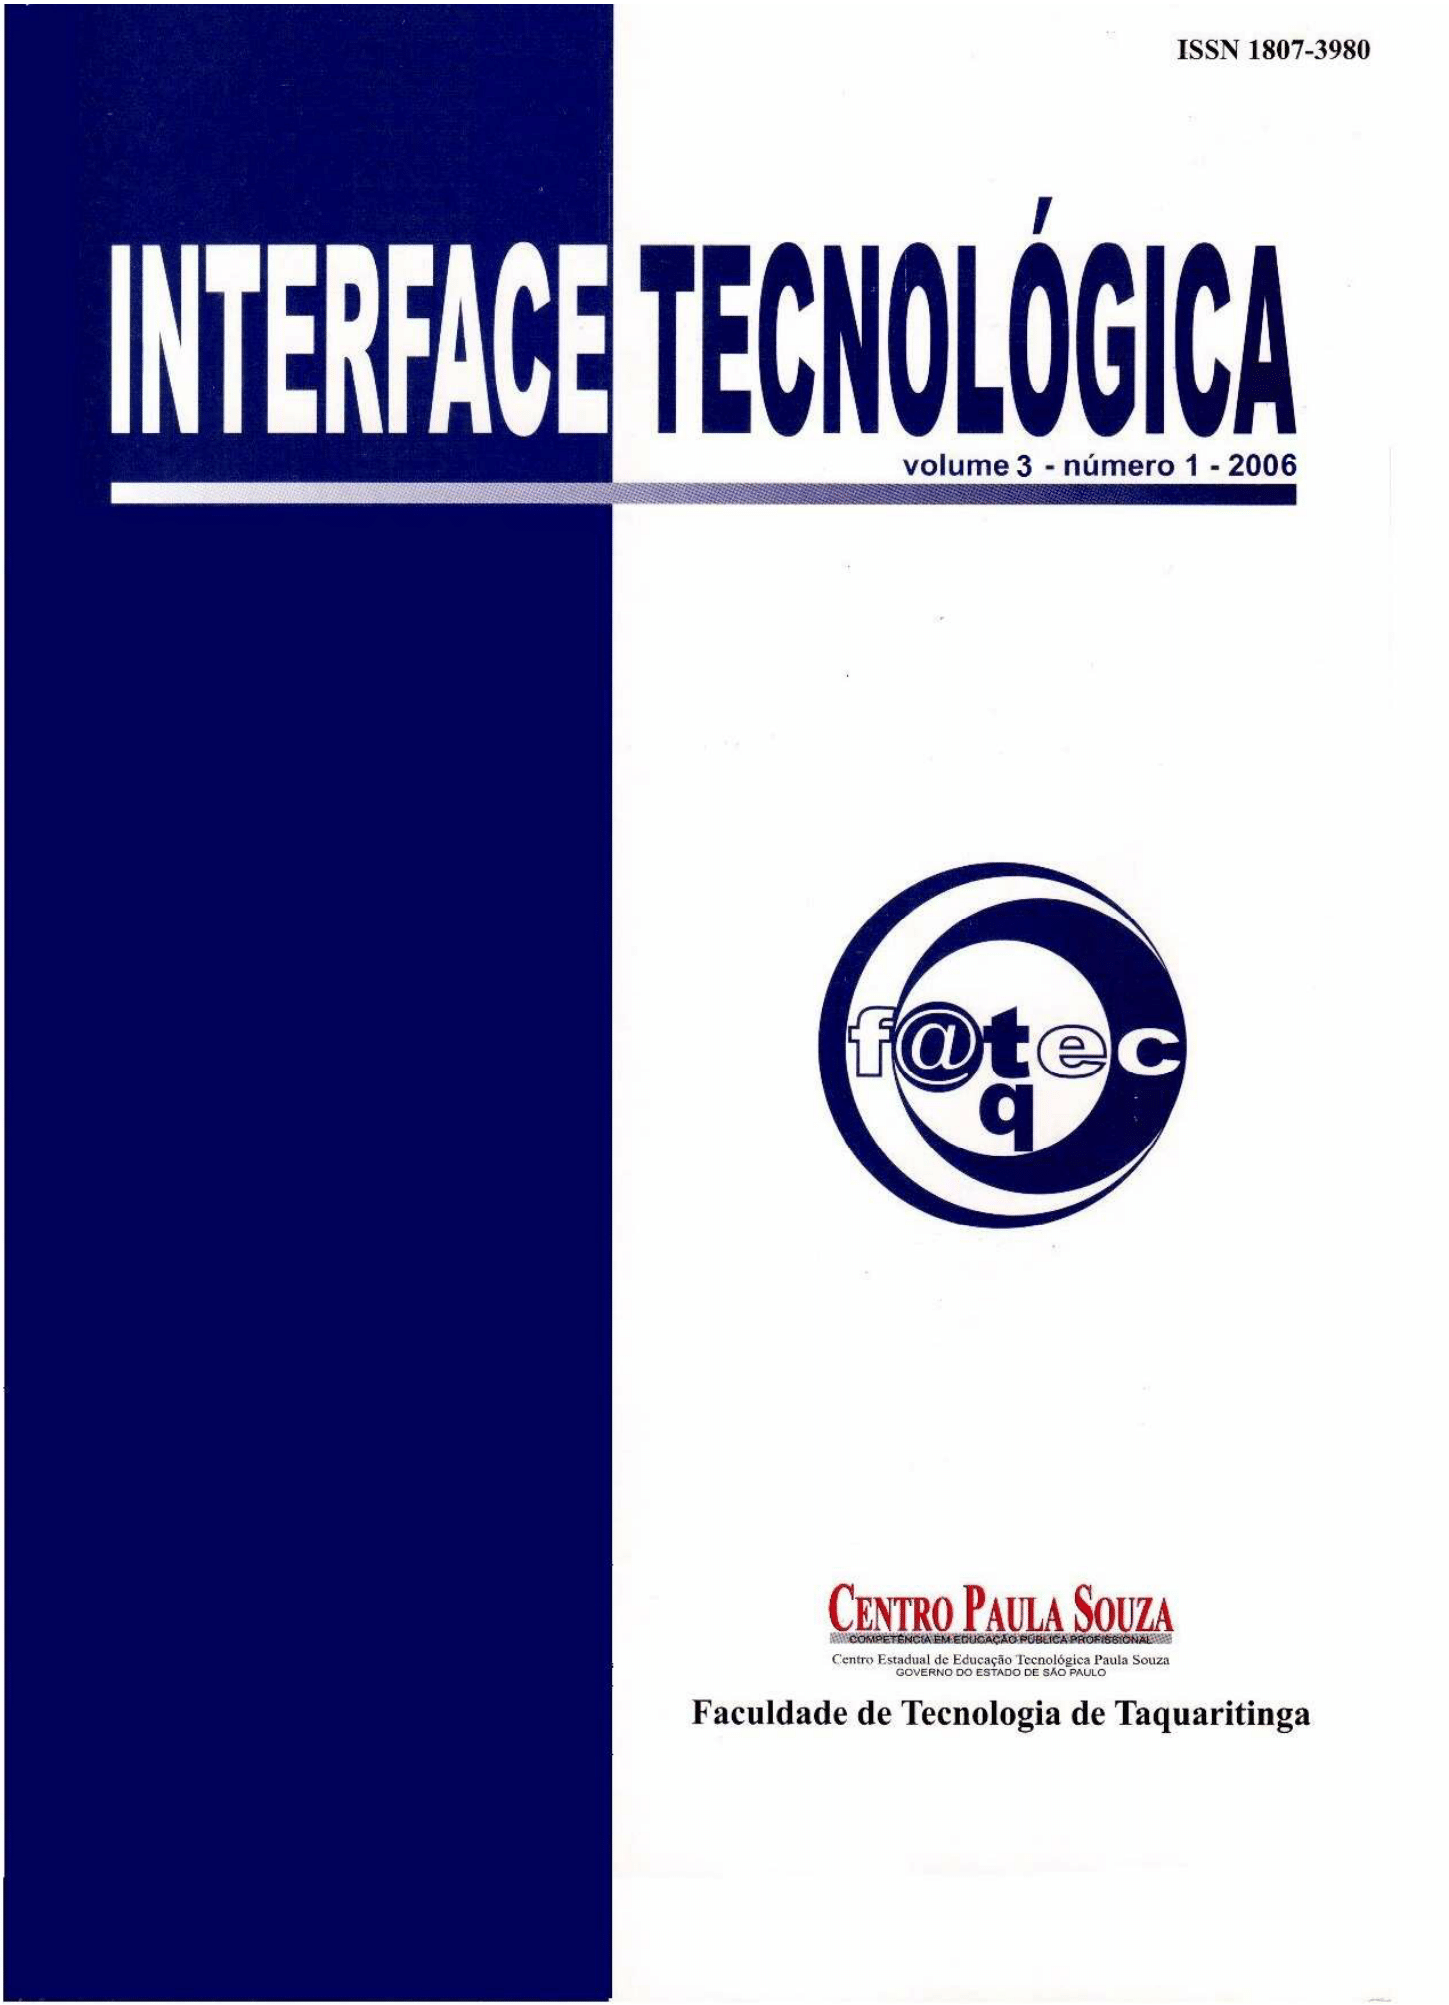 					Visualizar v. 3 n. 1 (2006): Revista Interface Tecnológica
				